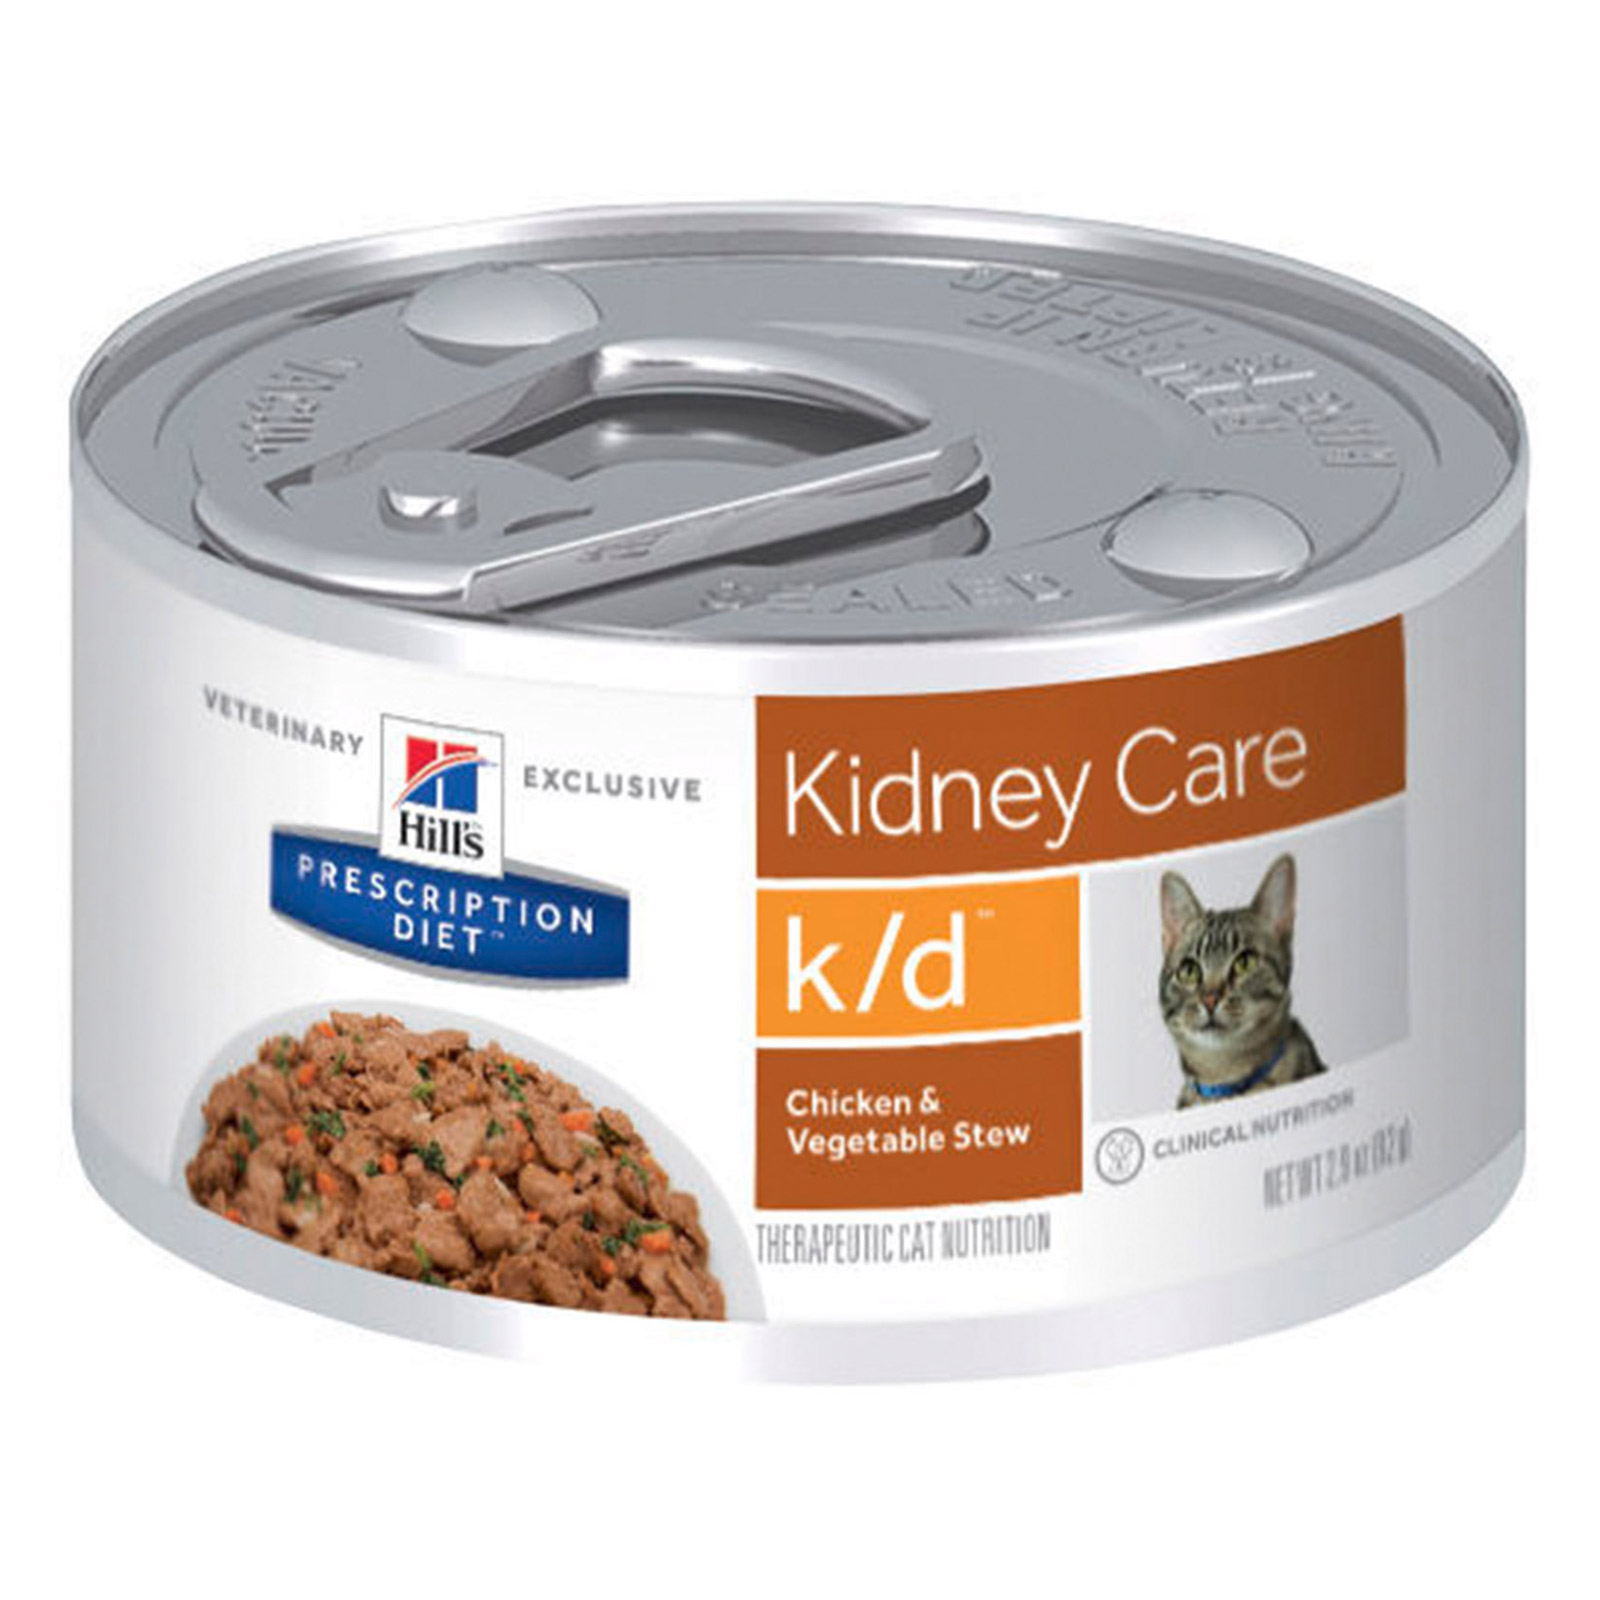 Hill's Prescription Diet K/D Pâté with Chicken Feline Cans for Food